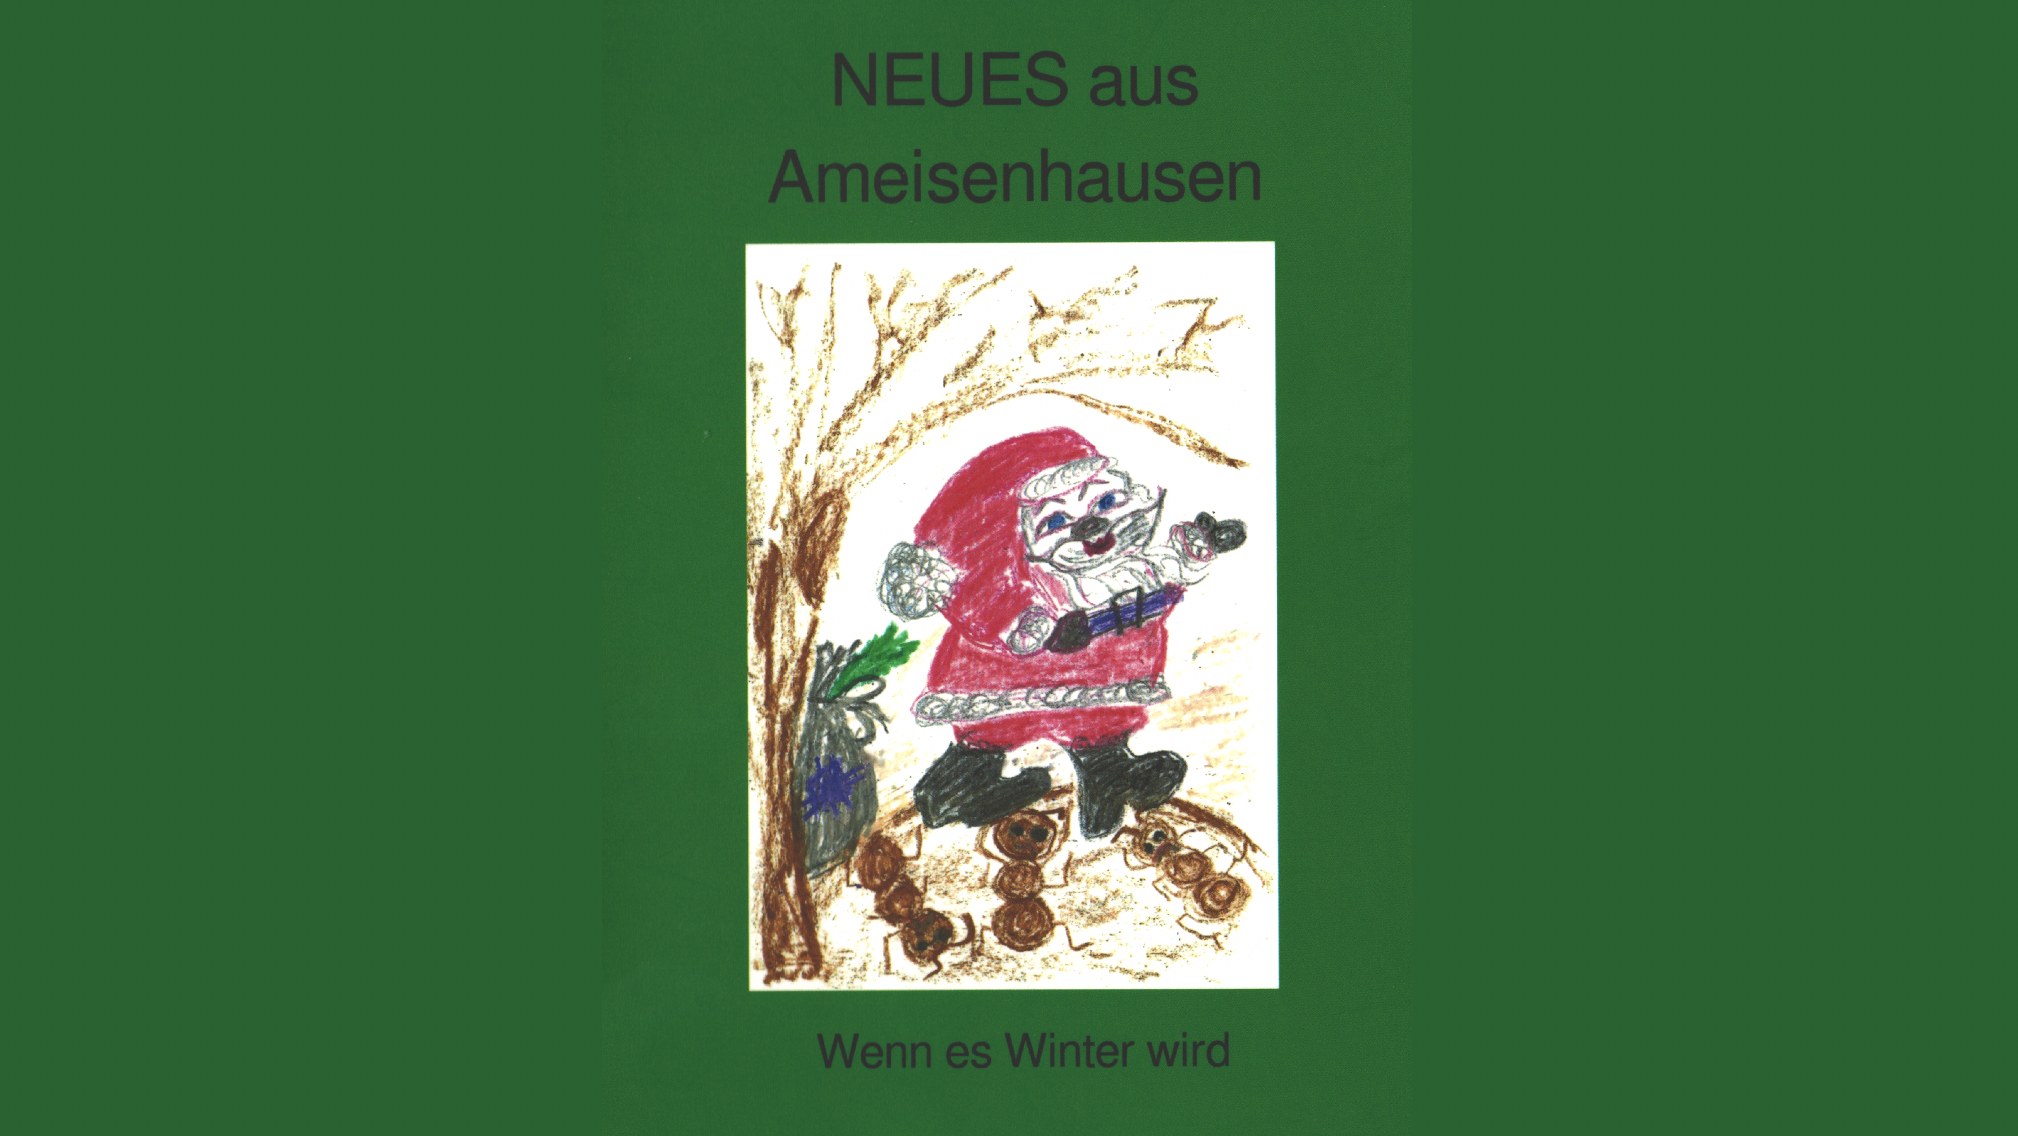 Titel des Buchs "Neues aus Ameisenhausen", Kinderzeichnung einer als Weihnachtsmann verkleideten Ameise 